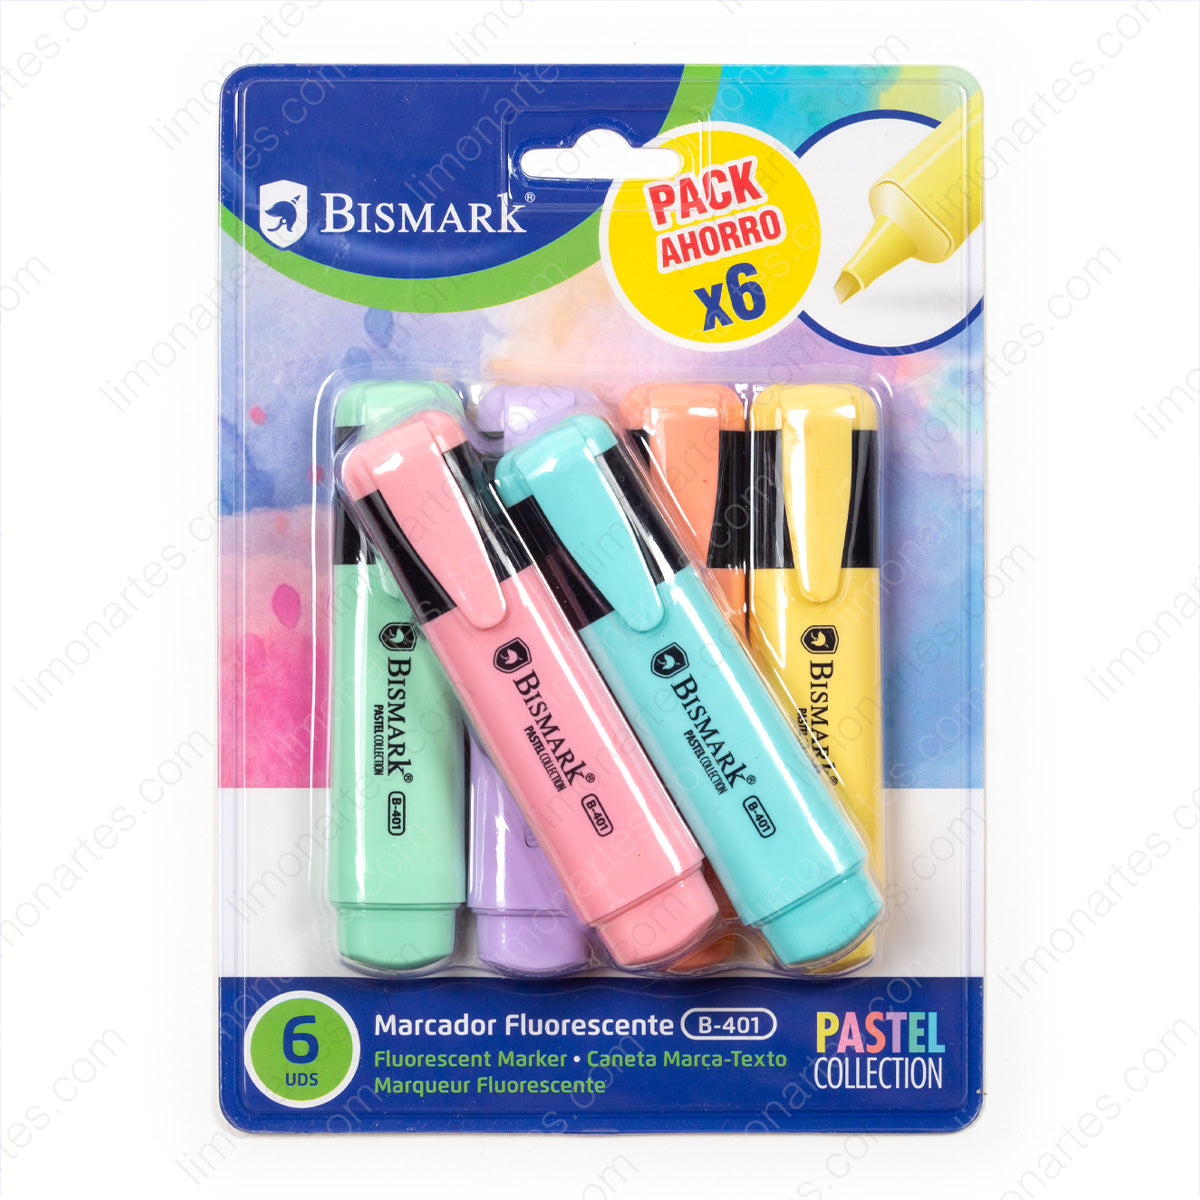 Marqueur fluorescent Bismark/ Collection Pastel/ Pack d’épargne x 6